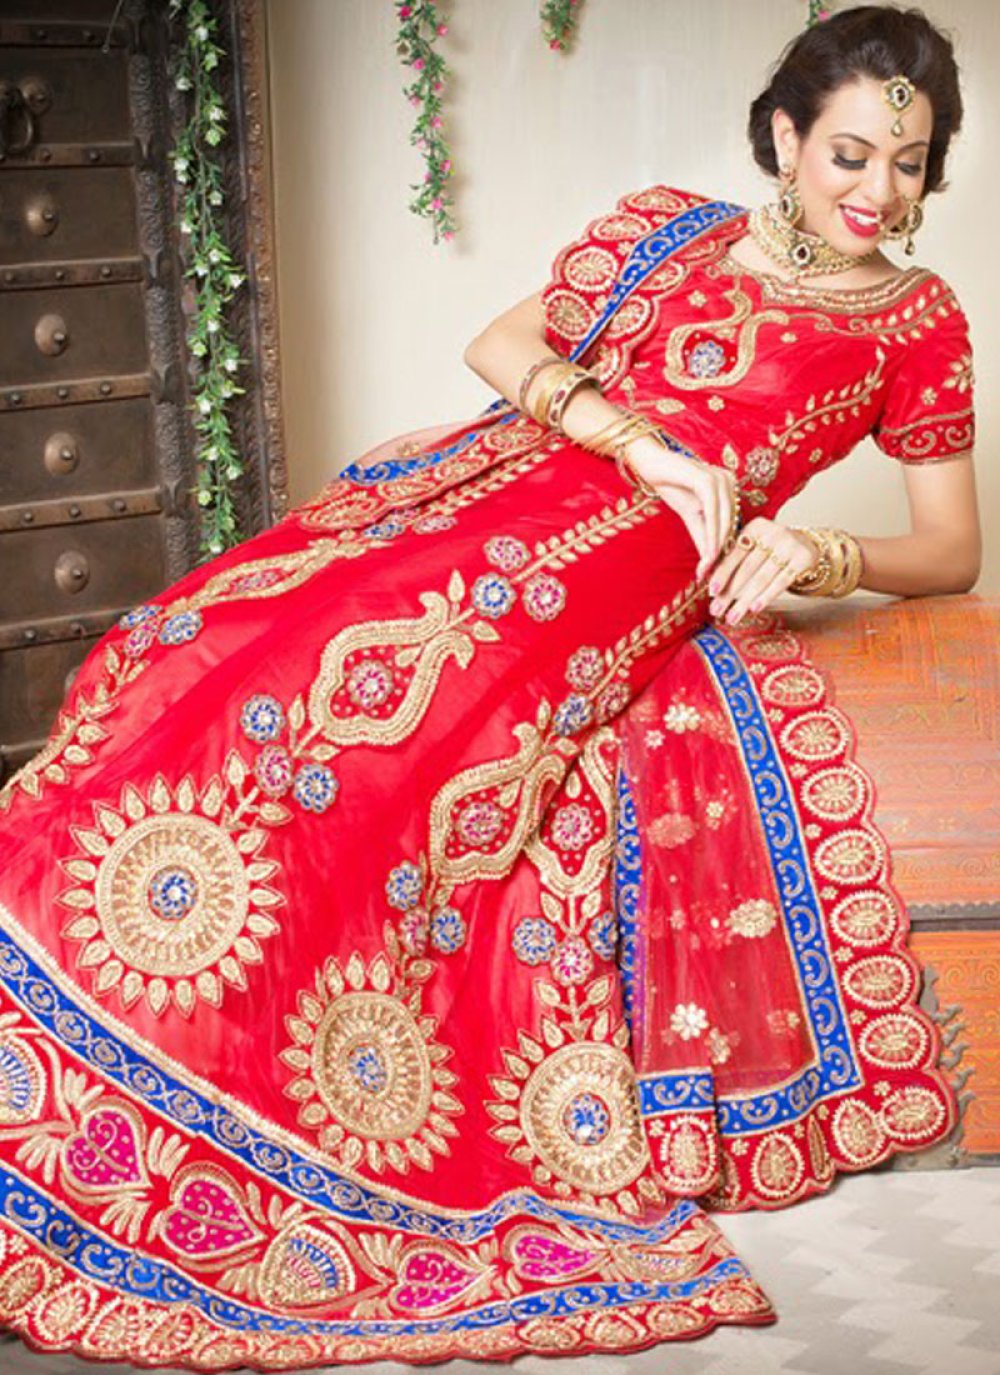 Maharashtrian Bridal Looks That Are Inspiration-Worthy | WedMeGood